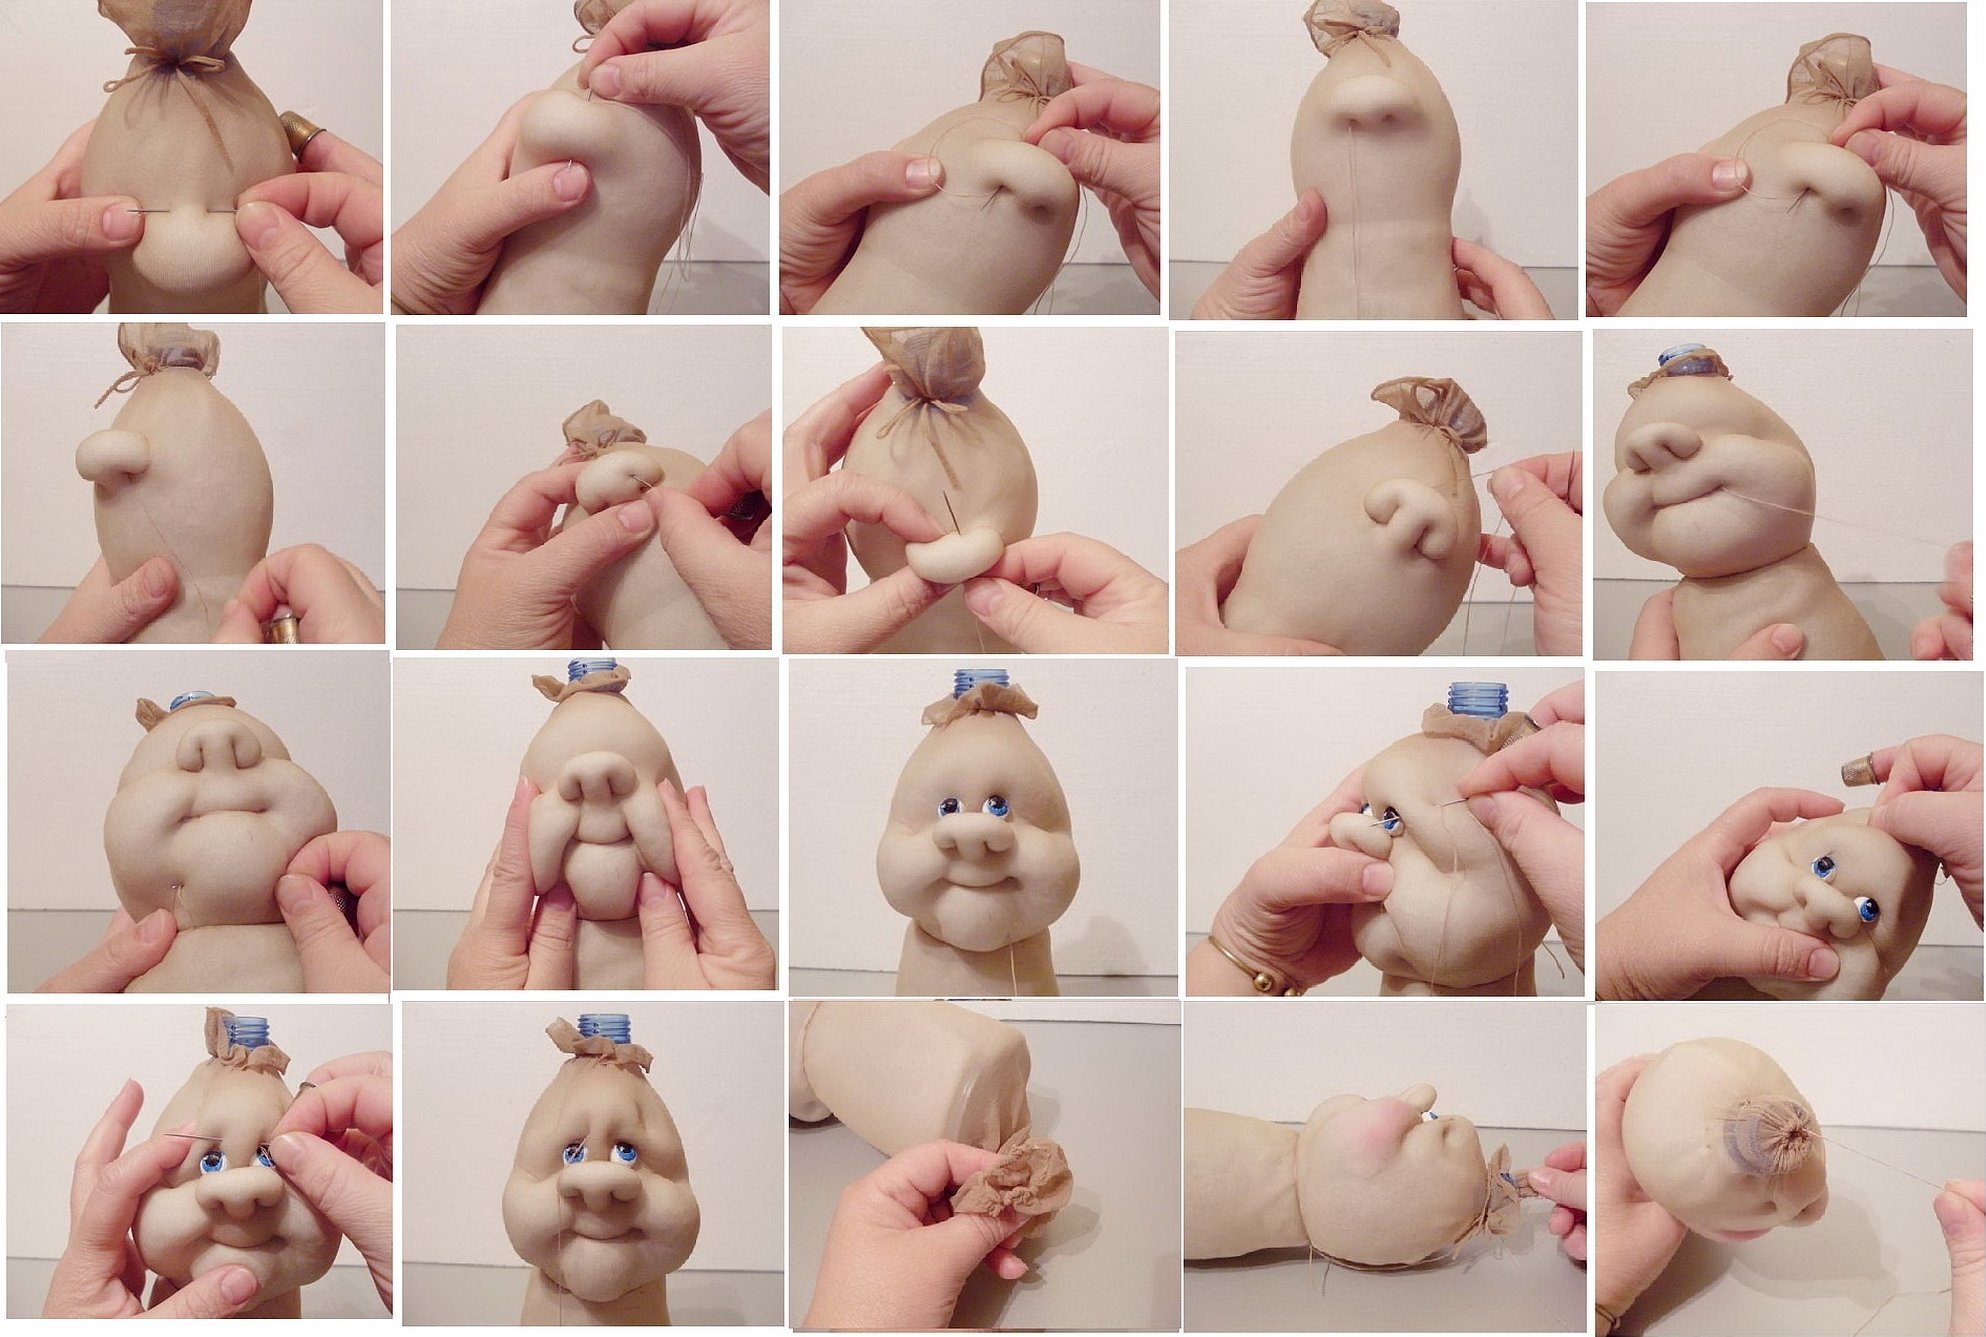 Как сделать руки для куклы из колготок мастер класс: пошаговый мастер-класс для начинающих. Как сшить красивую куклу из колготок и синтепона в виде домовенка Кузи по инструкции?